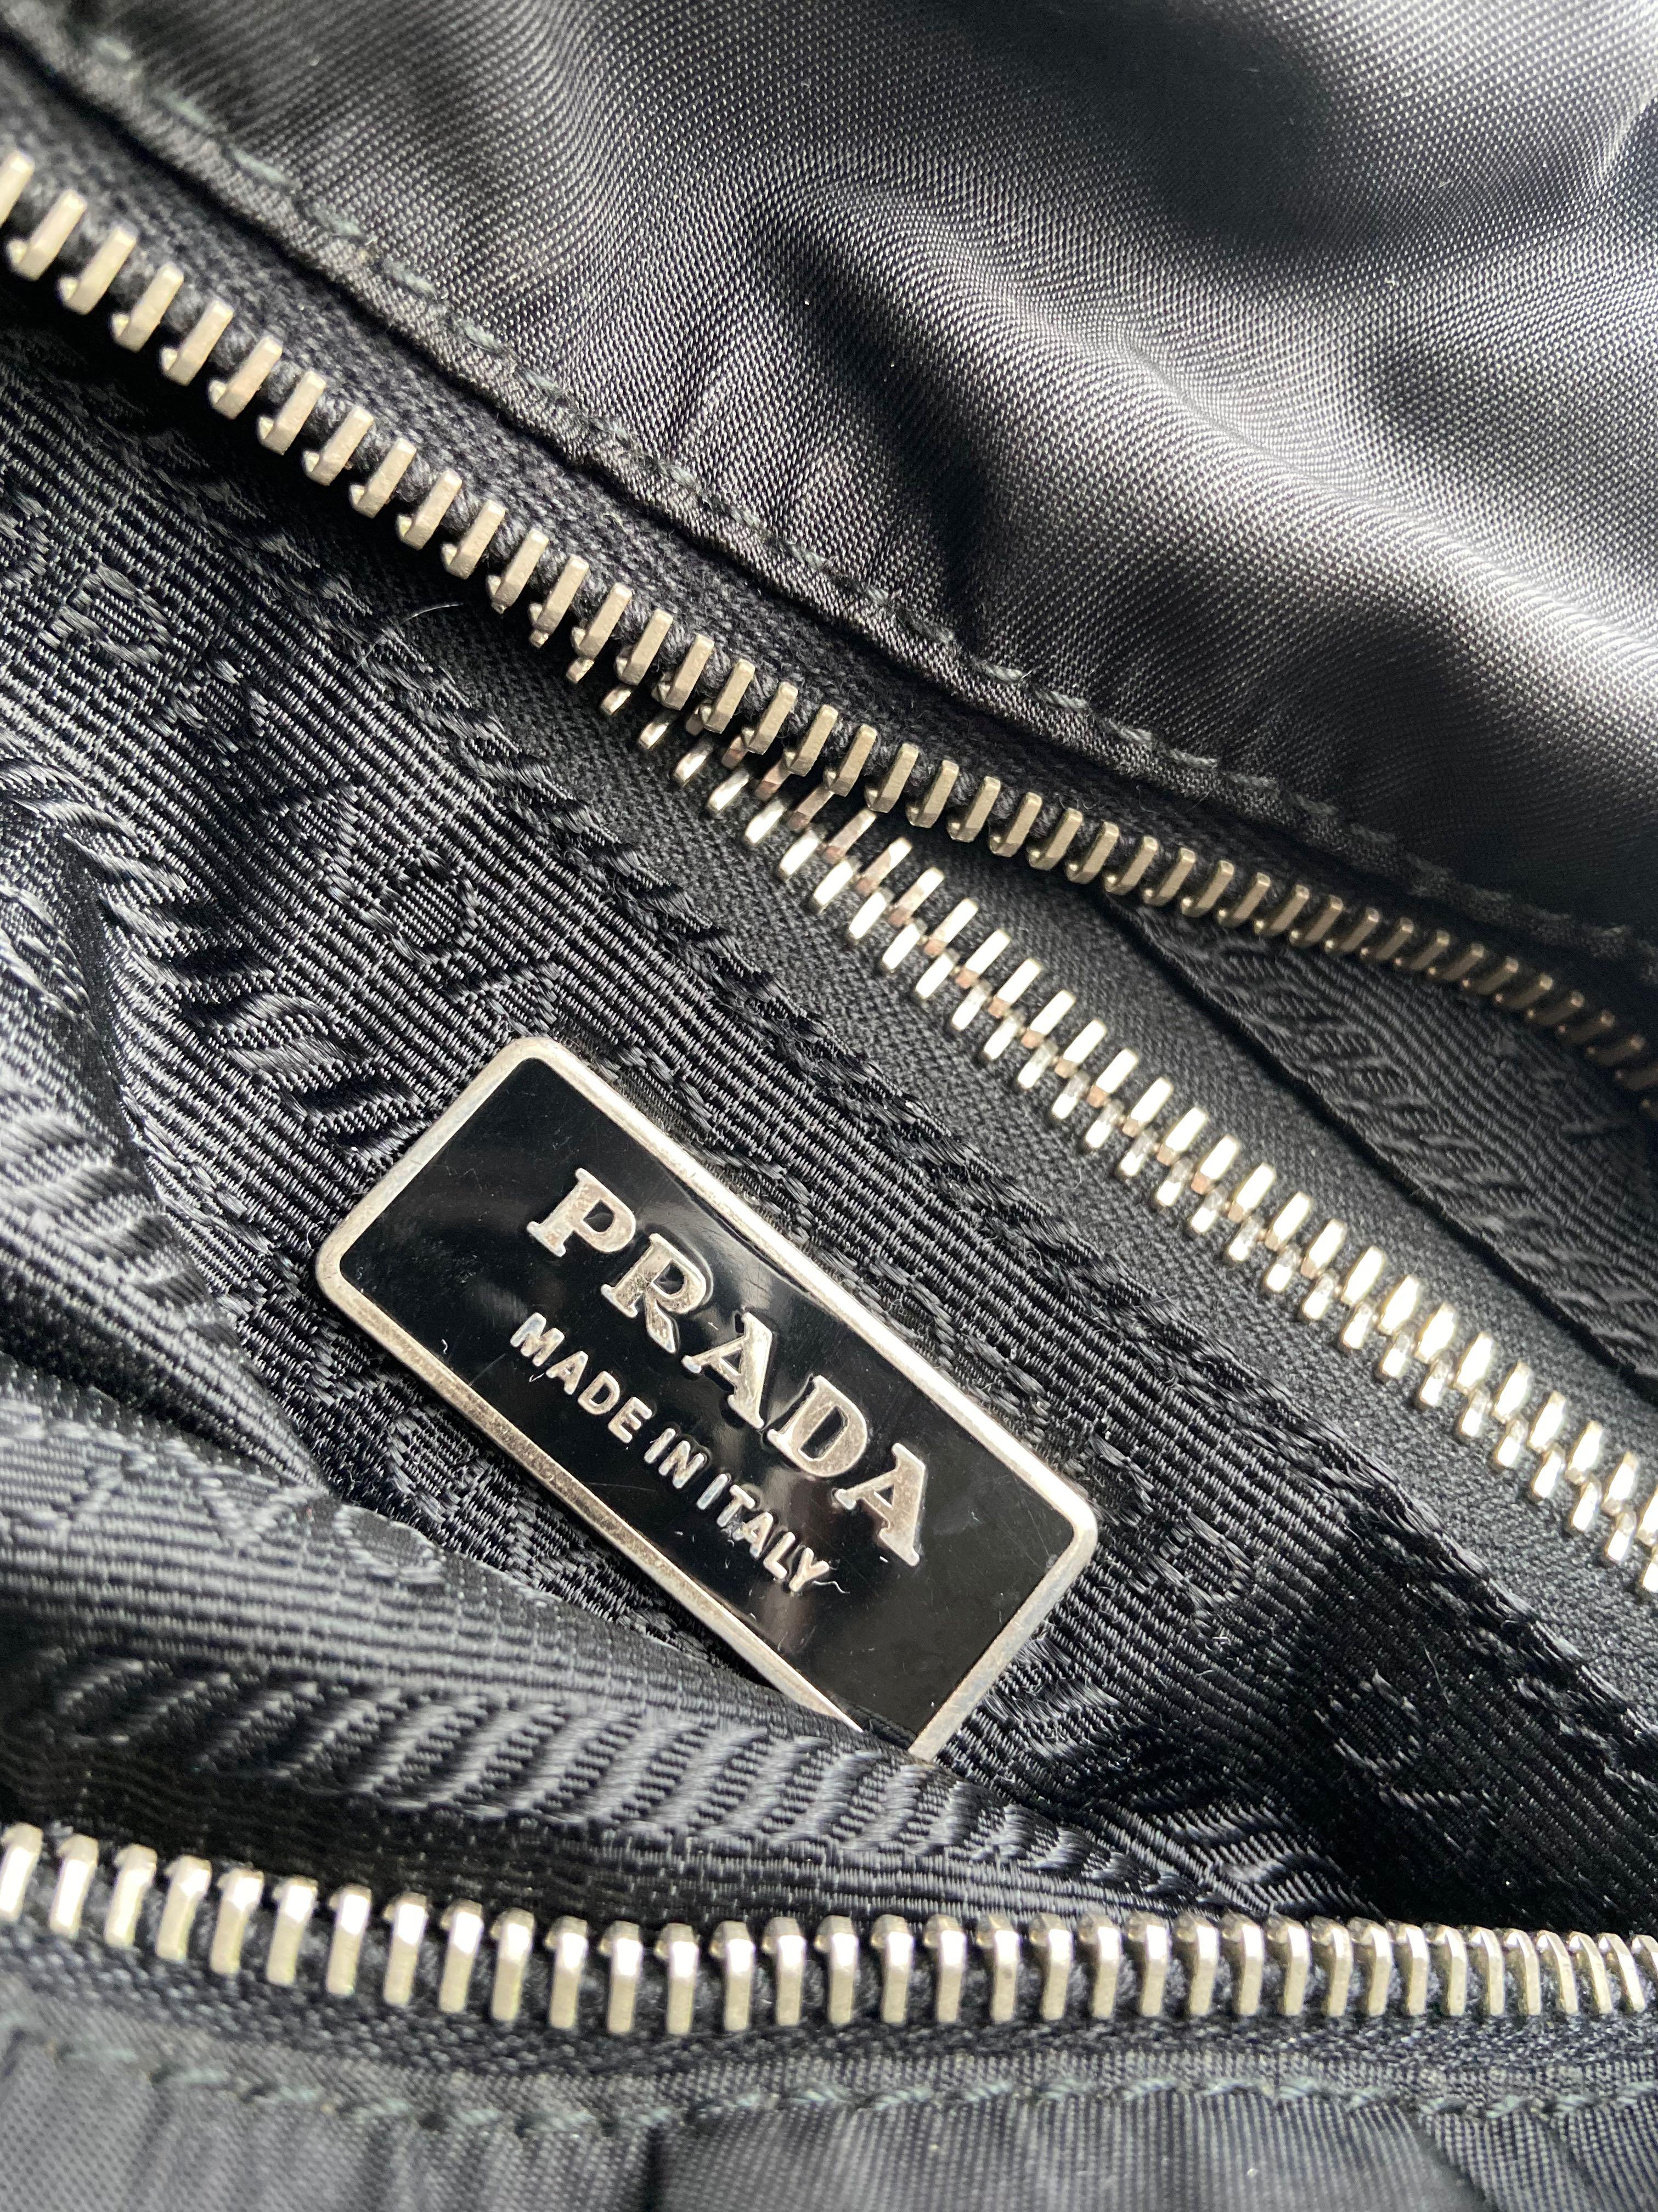 Prada Tessuto Nylon Tote Bag/Authentic/Unwrapping 